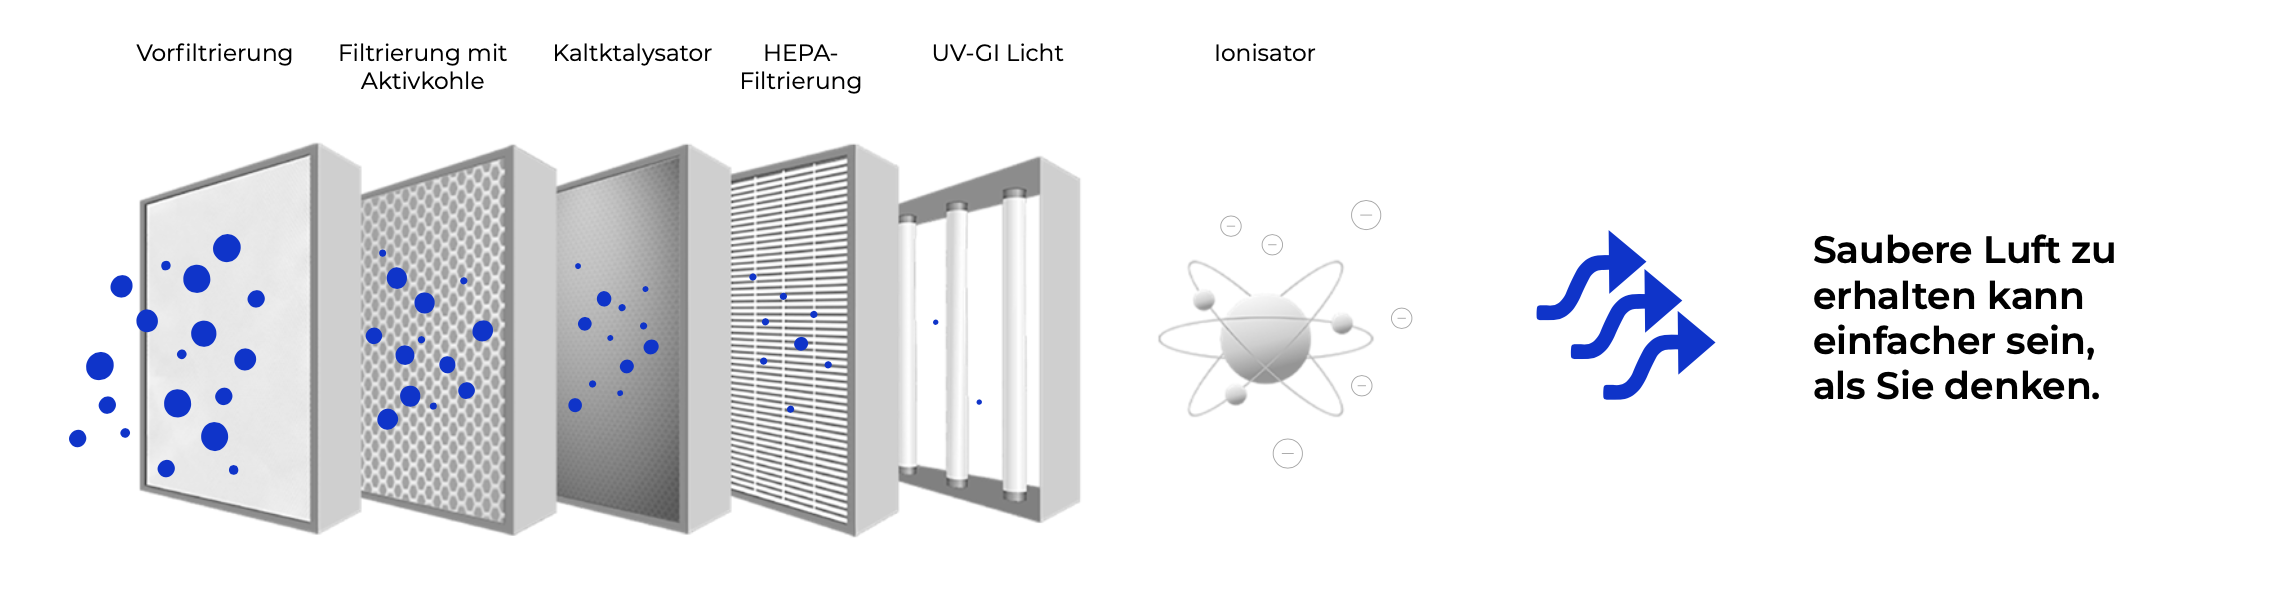 Mehrstufige Filtersysteme in Luftreiniger Modellen AIR8 (Vorfiltrierung, Aktivkohlefilter, Kaltkatalysator, HEPA-Filtrierung, UV-GI Licht, Ionisator)